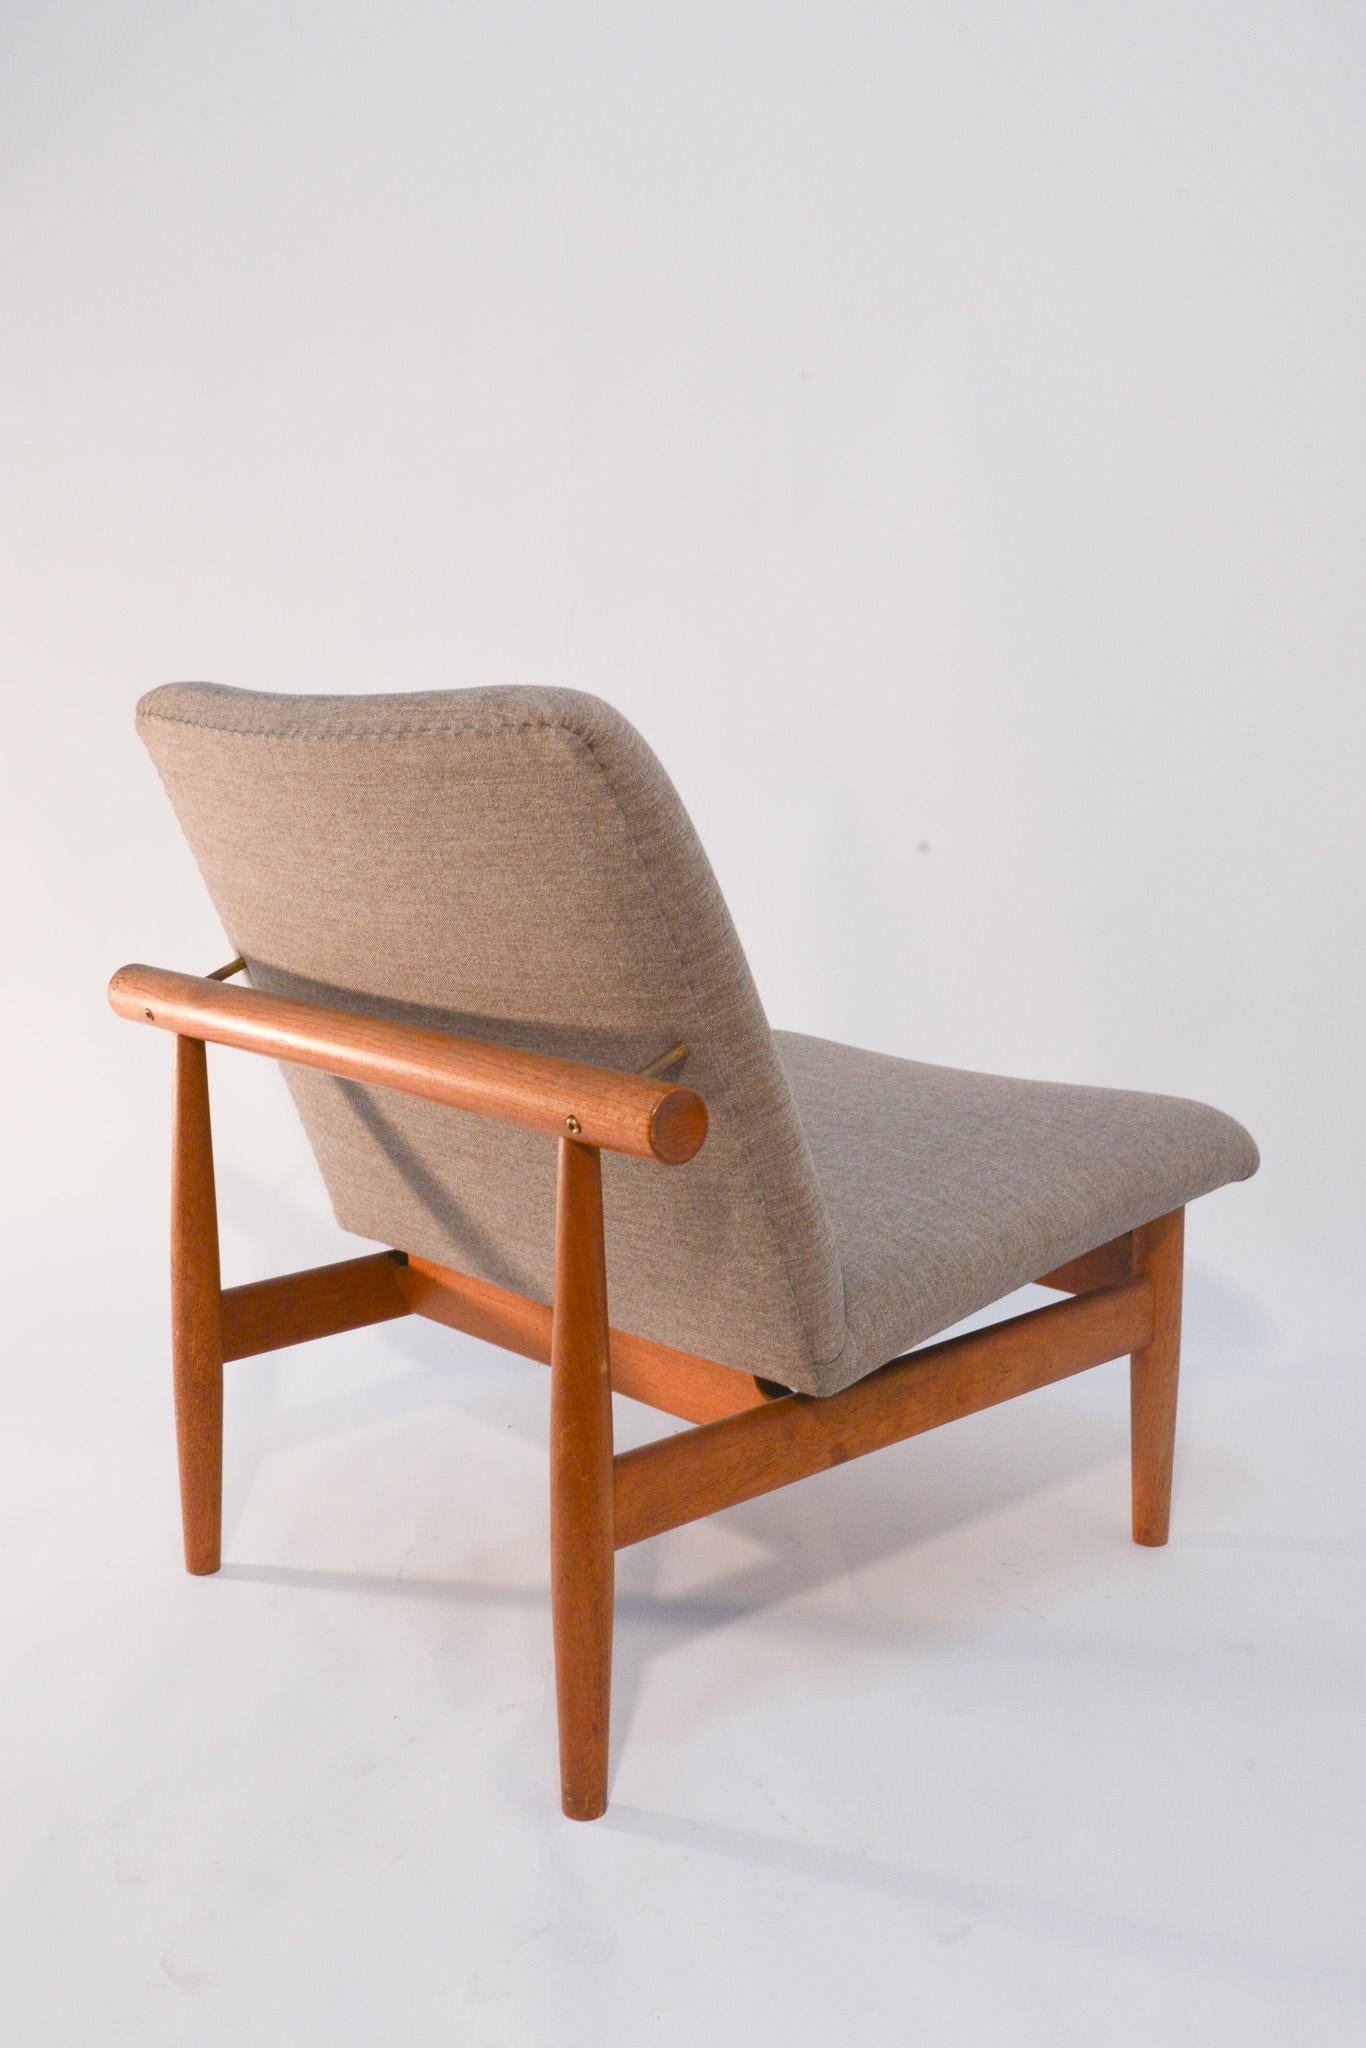 Cette chaise emblématique a été conçue par Finn Juhls en 1957 et relancée en 2007. La chaise fait partie de la ligne Japan de Juhls et s'inspire des techniques de construction traditionnelles japonaises. Sa forme simple est construite à partir de